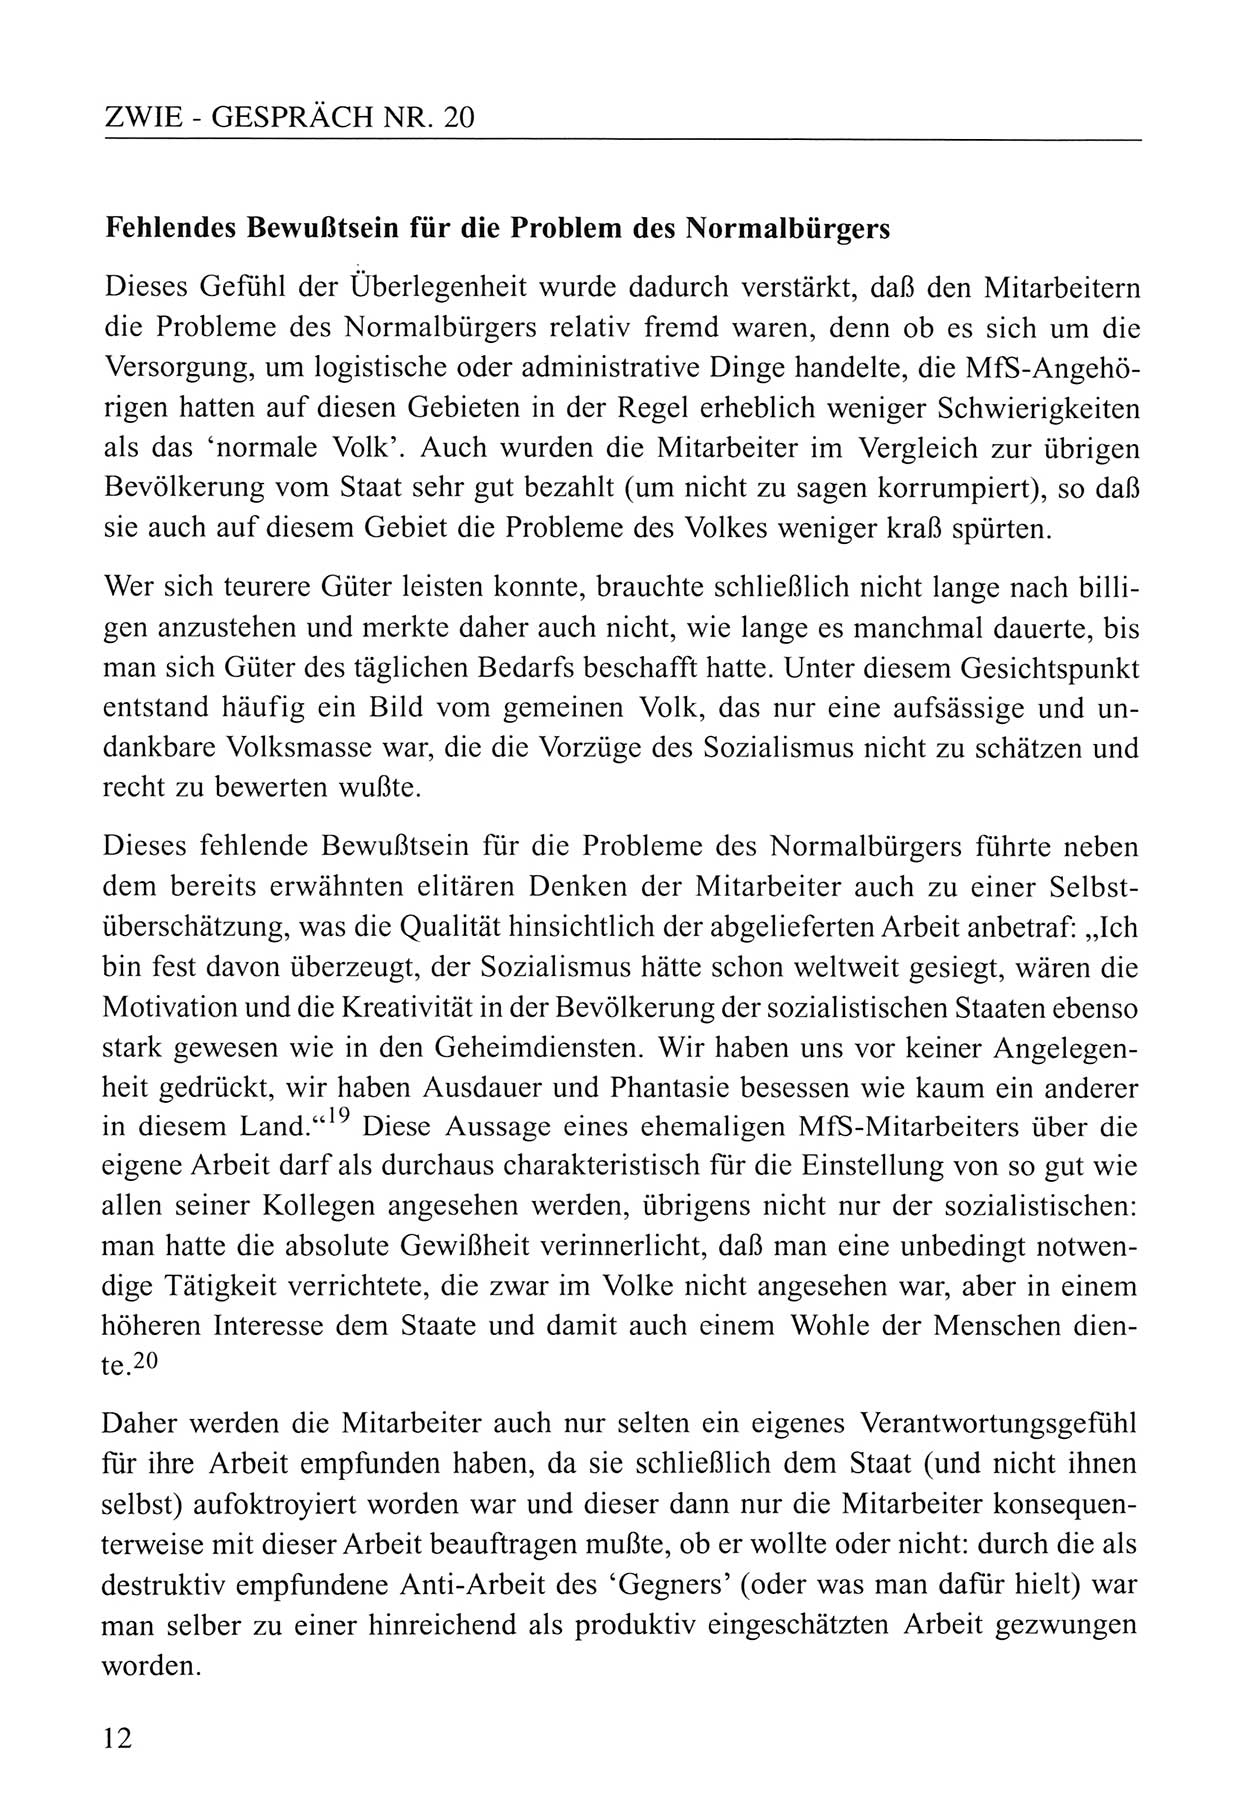 Zwie-Gespräch, Beiträge zum Umgang mit der Staatssicherheits-Vergangenheit [Deutsche Demokratische Republik (DDR)], Ausgabe Nr. 20, Berlin 1994, Seite 12 (Zwie-Gespr. Ausg. 20 1994, S. 12)